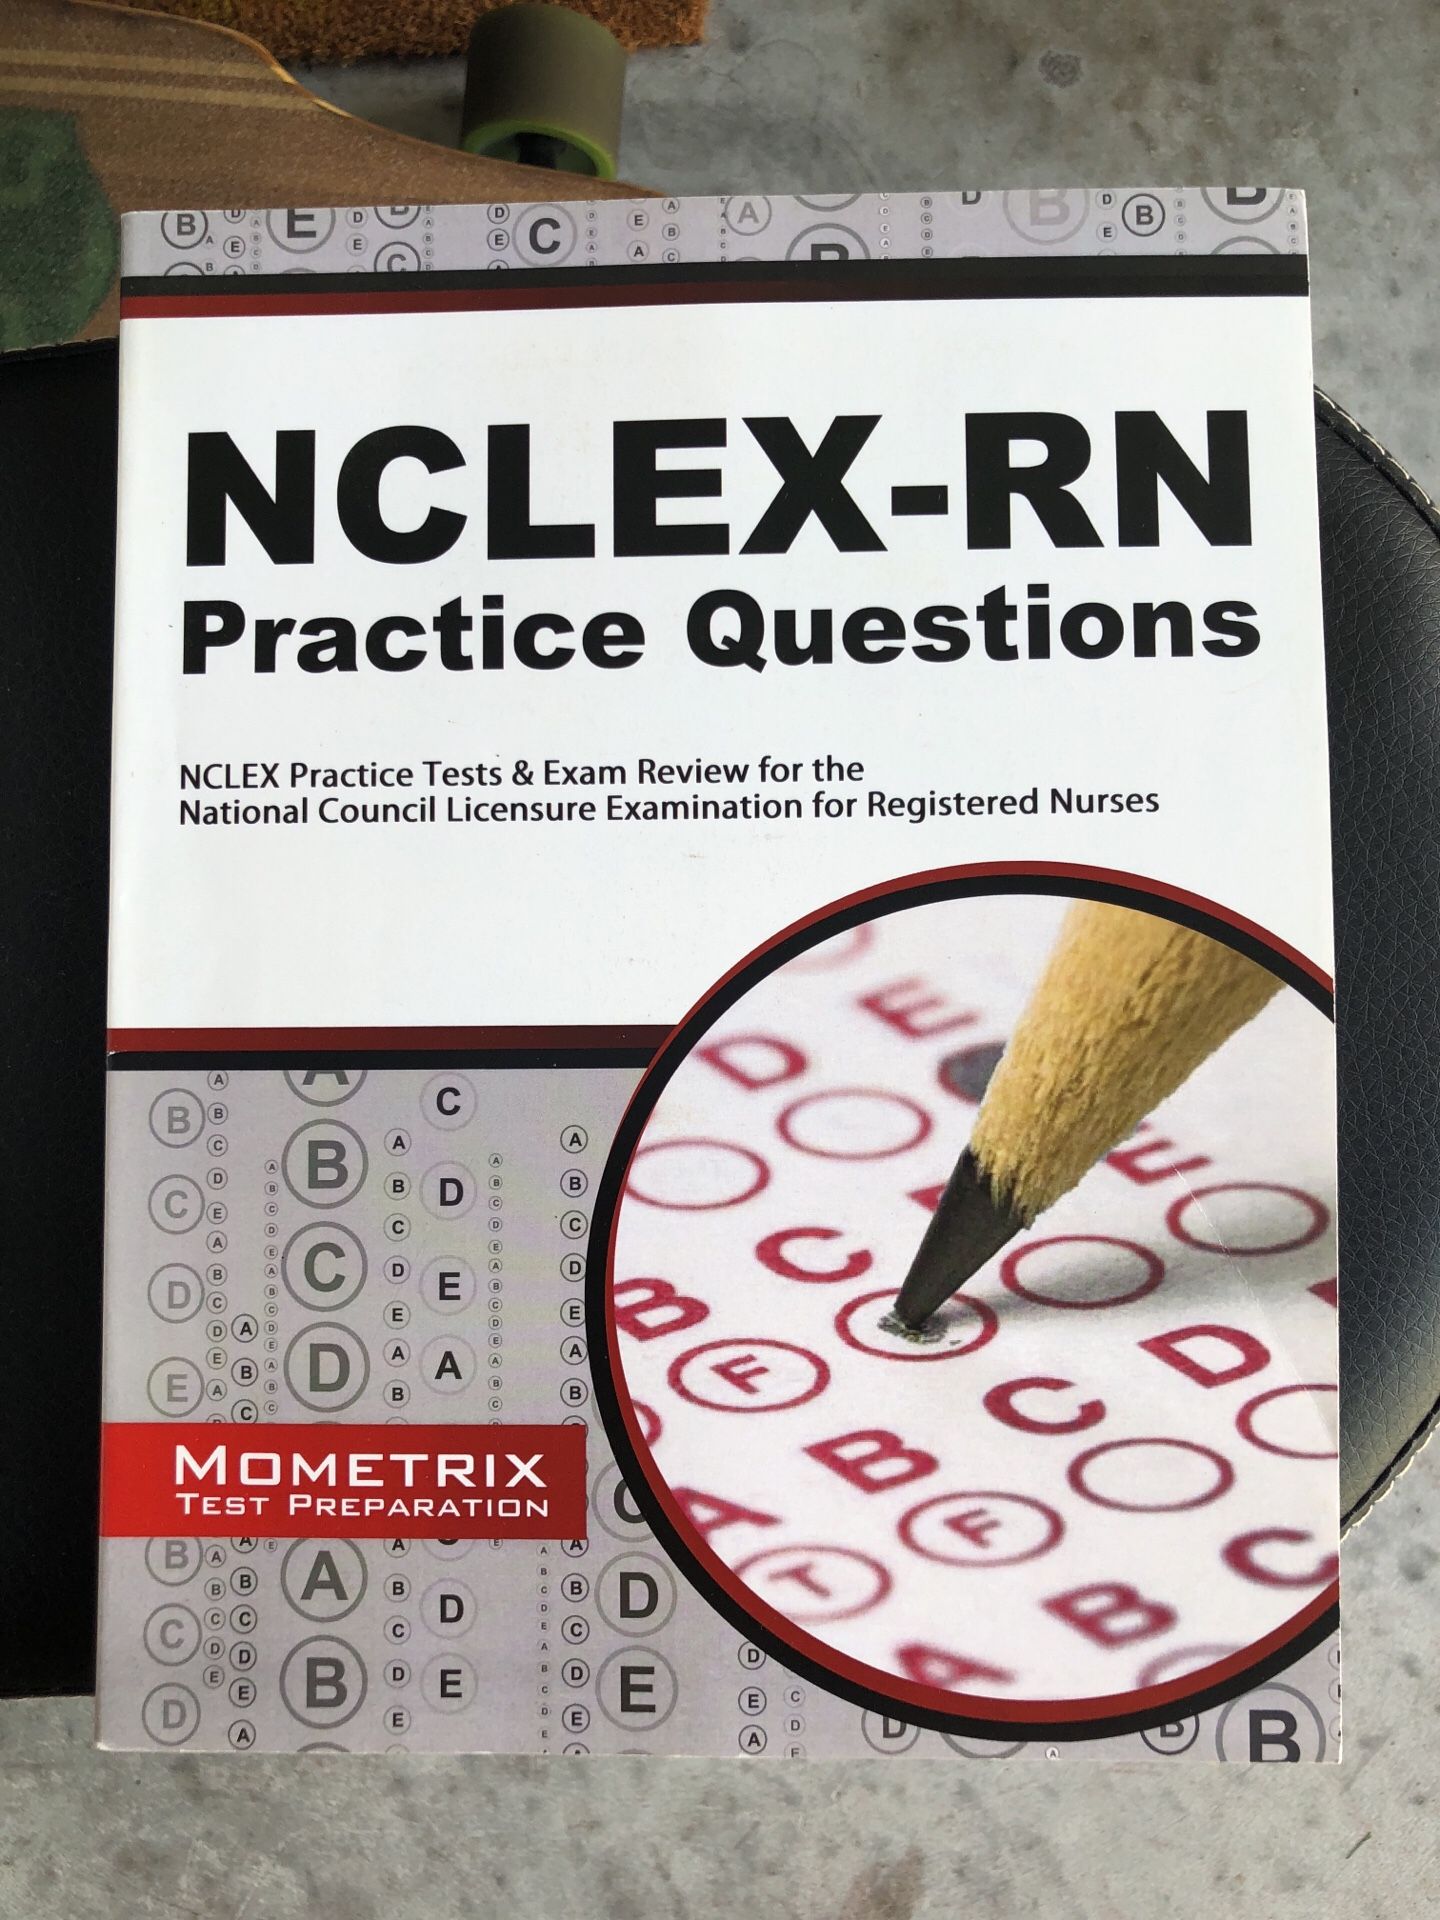 NCLEX practice questions